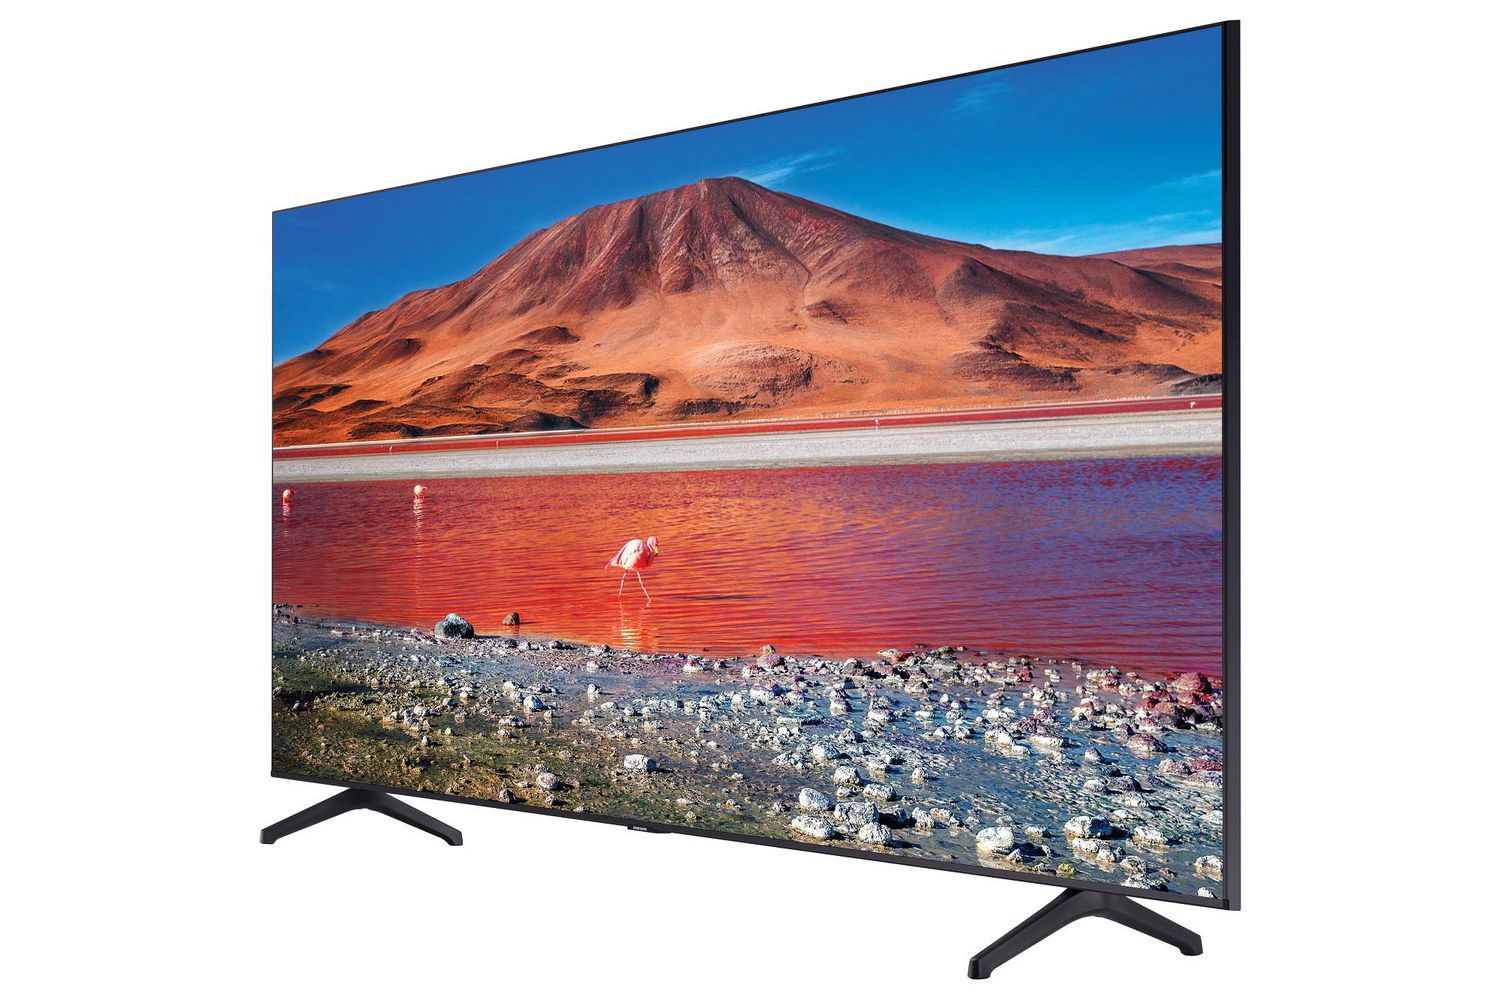 Samsung Crystal Display 4K UltraHD Smart TV TU7000 Walmart Canada